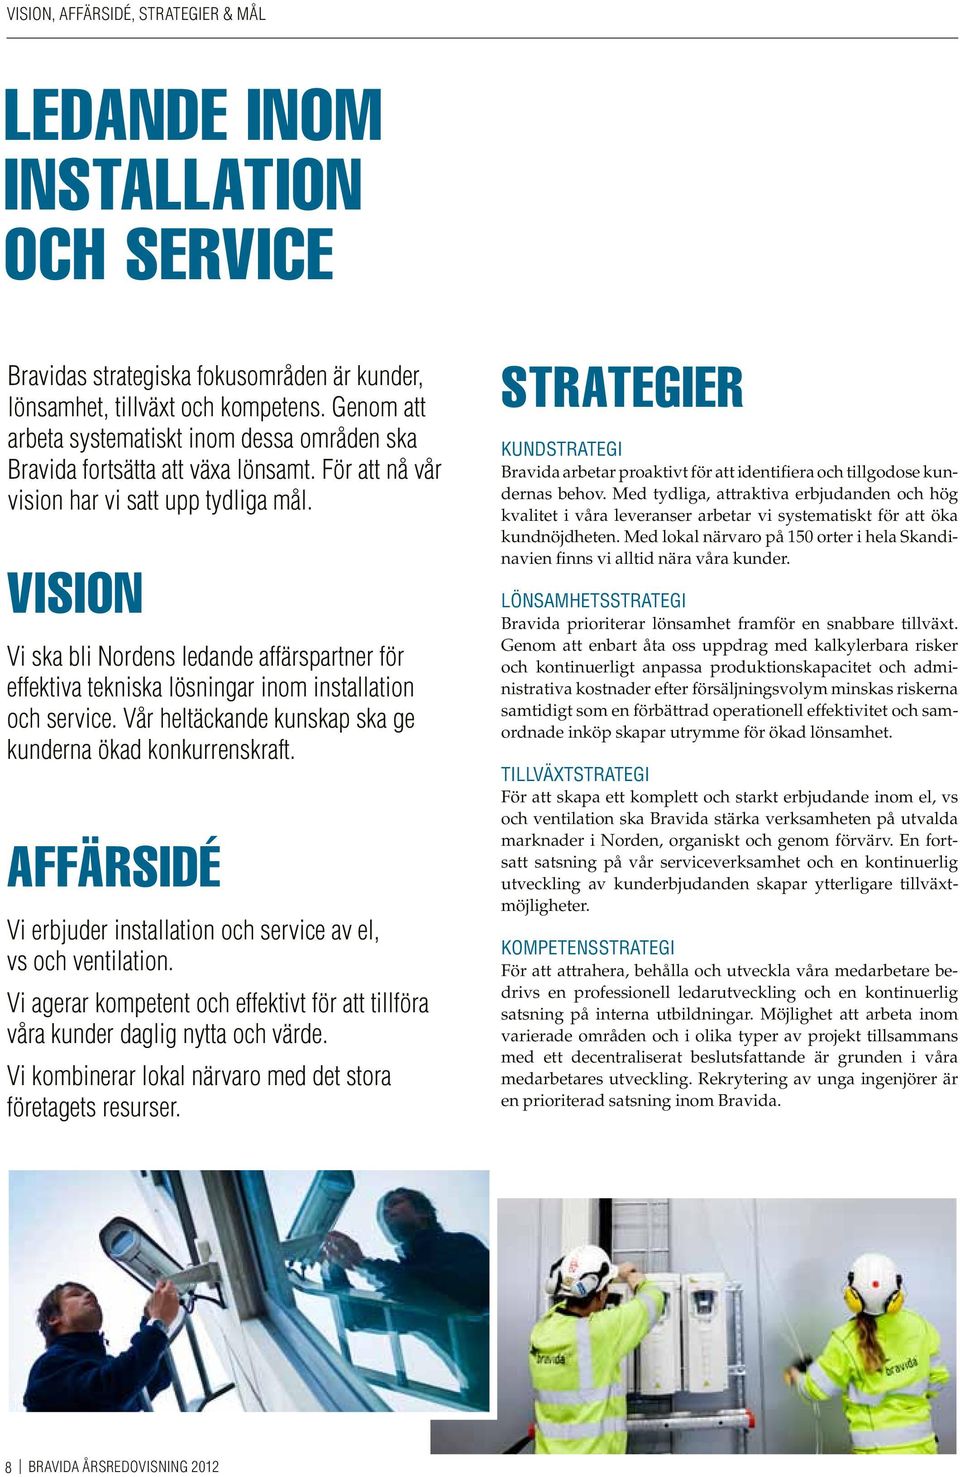 Vision Vi ska bli Nordens ledande affärspartner för effektiva tekniska lösningar inom installation och service. Vår heltäckande kunskap ska ge kunderna ökad konkurrenskraft.